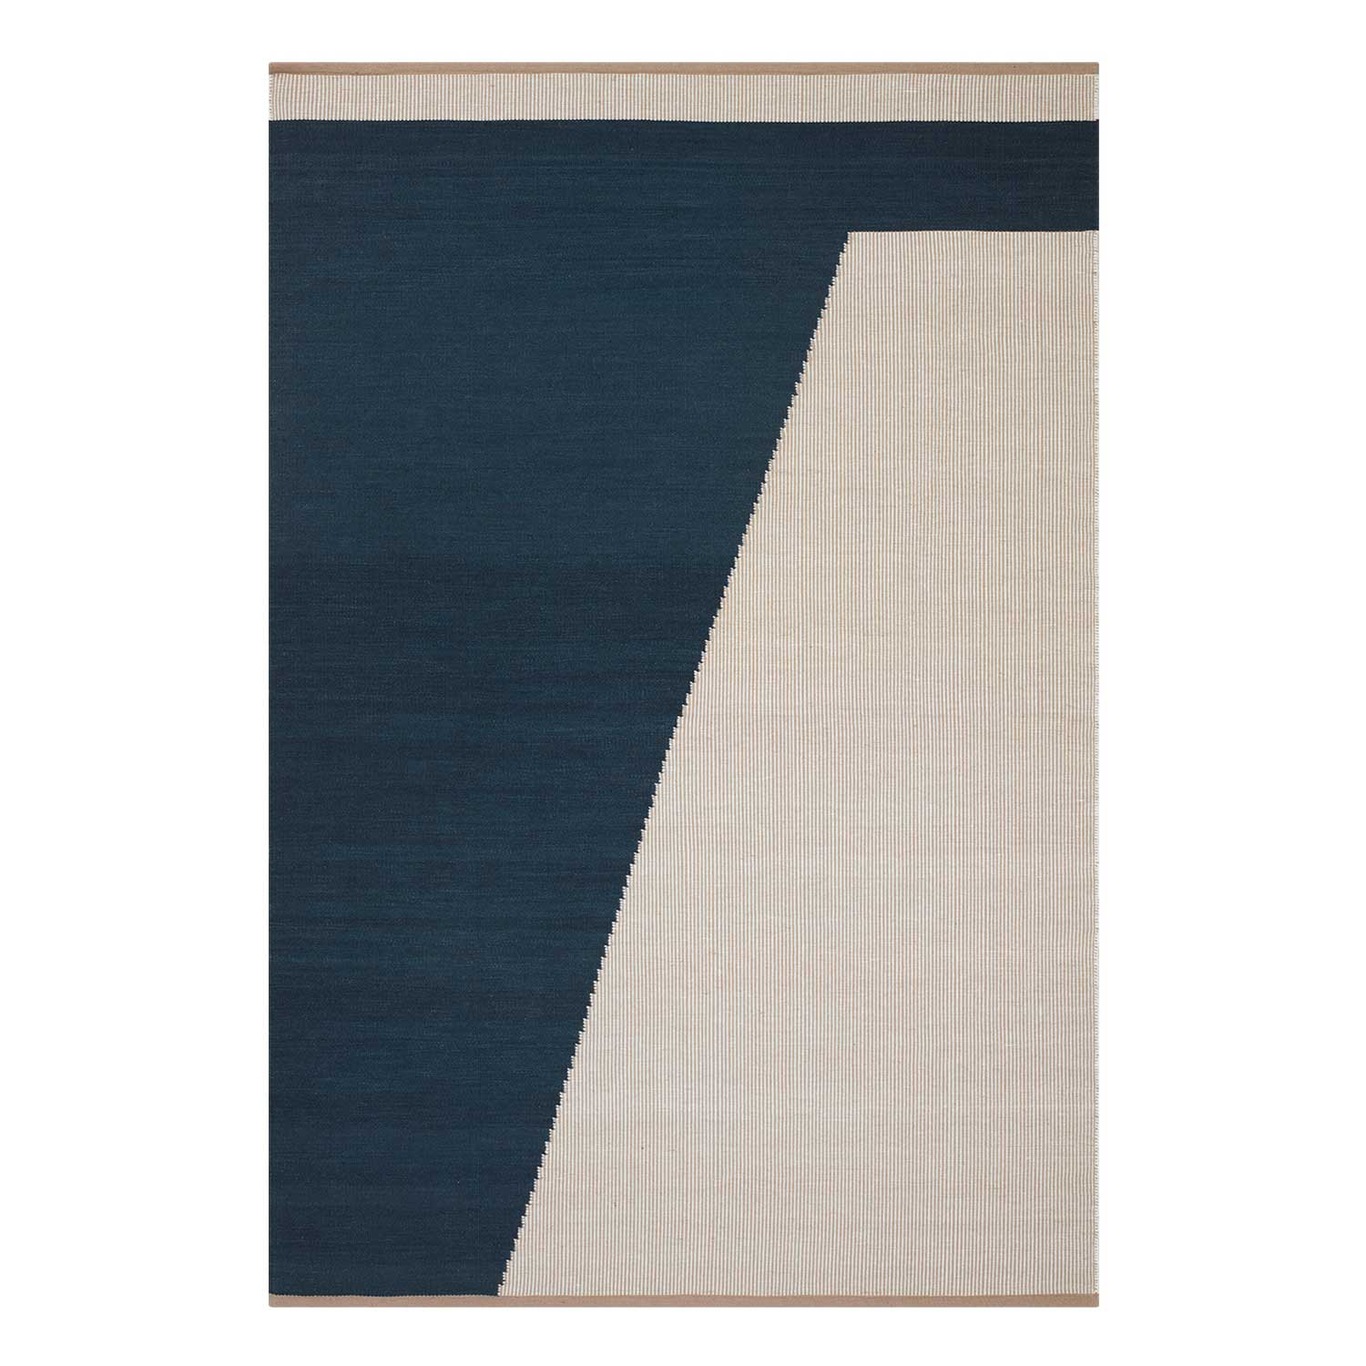 Una Teppich, Dunkelblau/Beige/Weiß, 230x320 cm